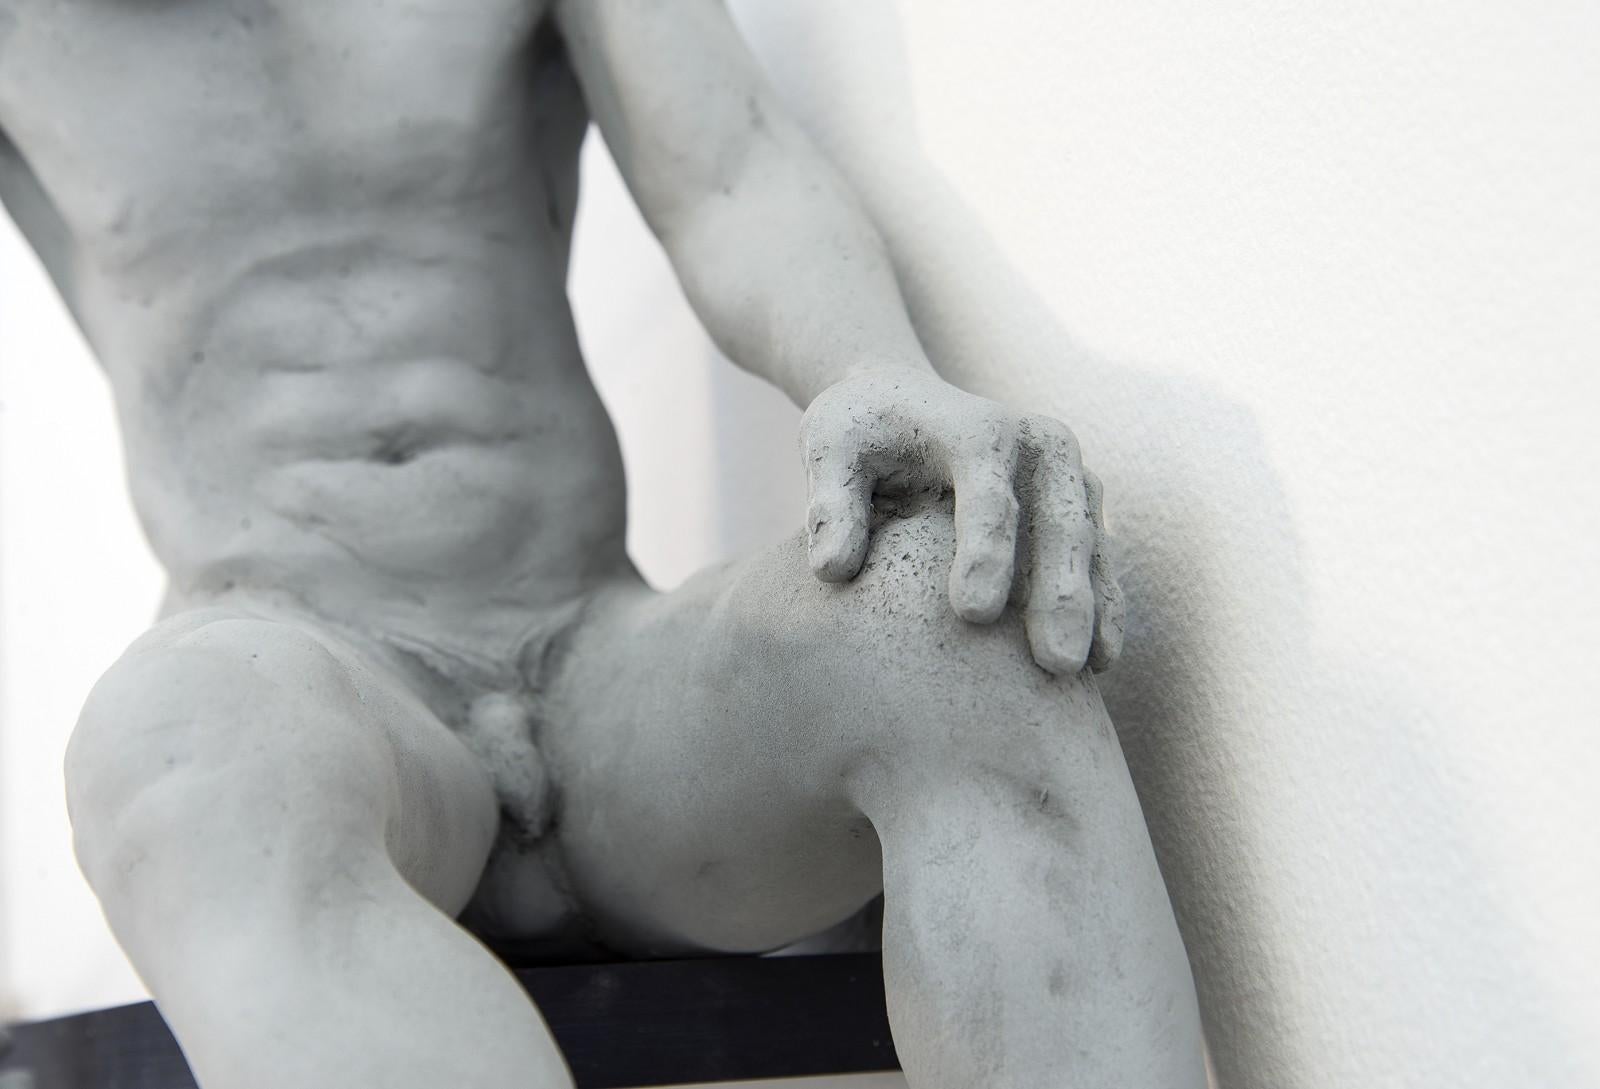 Tethered 1/9 – geistig, männlich, nackt, Figur, Mischtechnik, Wandskulptur (Zeitgenössisch), Sculpture, von W.W. Hung